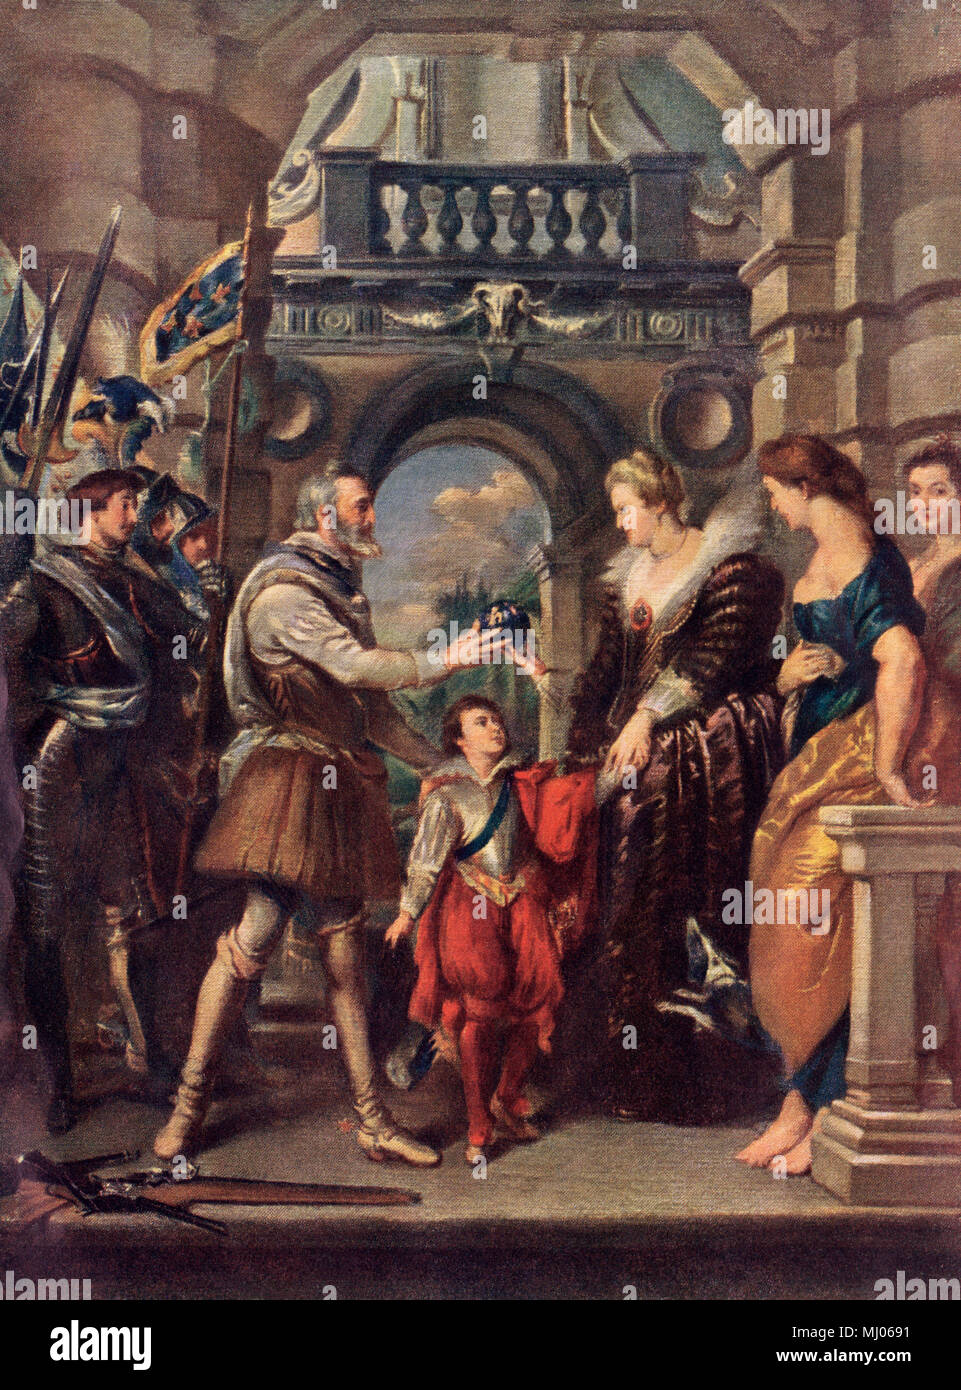 Le roi Henri IV de France avec Marie de Médicis. Lithographie couleur imprimée d'une peinture de Rubens Banque D'Images